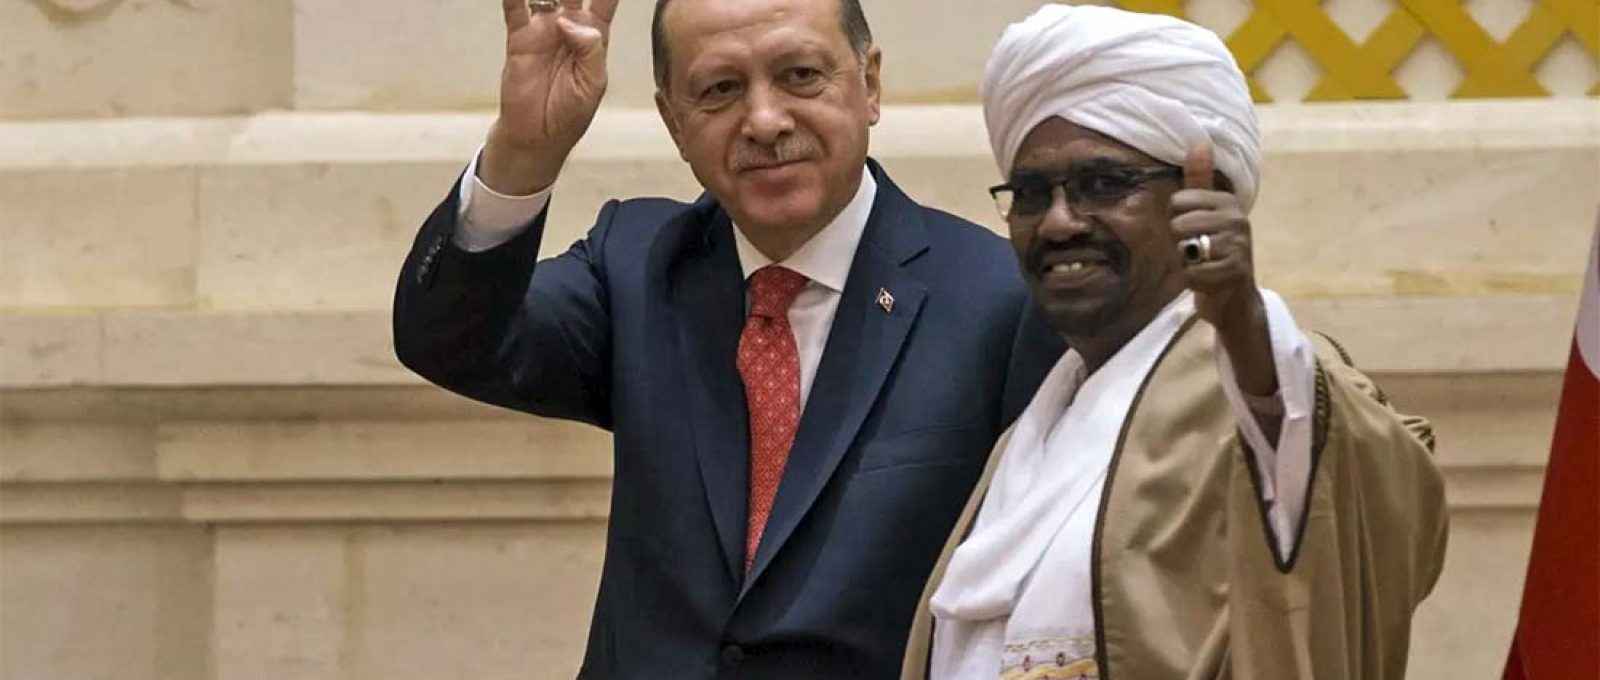 Os presidentes da Turquia, Recep Tayyip Erdogan (esquerda), e do Sudão, Omar al-Bashir (direita), durante coletiva de imprensa após a reunião em Cartum, Sudão, em 24 de dezembro de 2017 (Binnur Ege Gürün/Agência Anadolu).